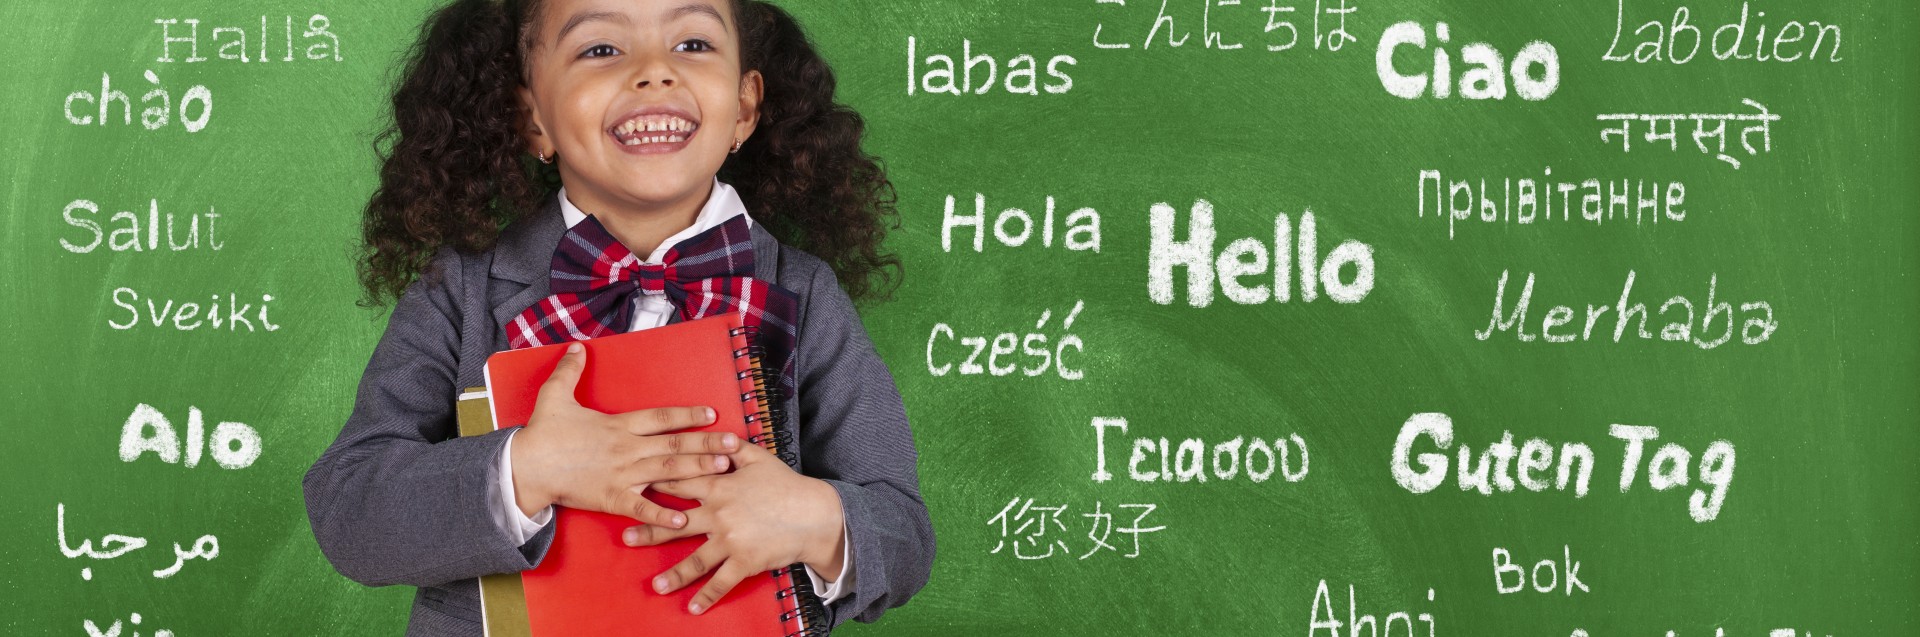 En jente står foran en tavle med en bok i armene. På tavlen står det "hallo" på flere språk